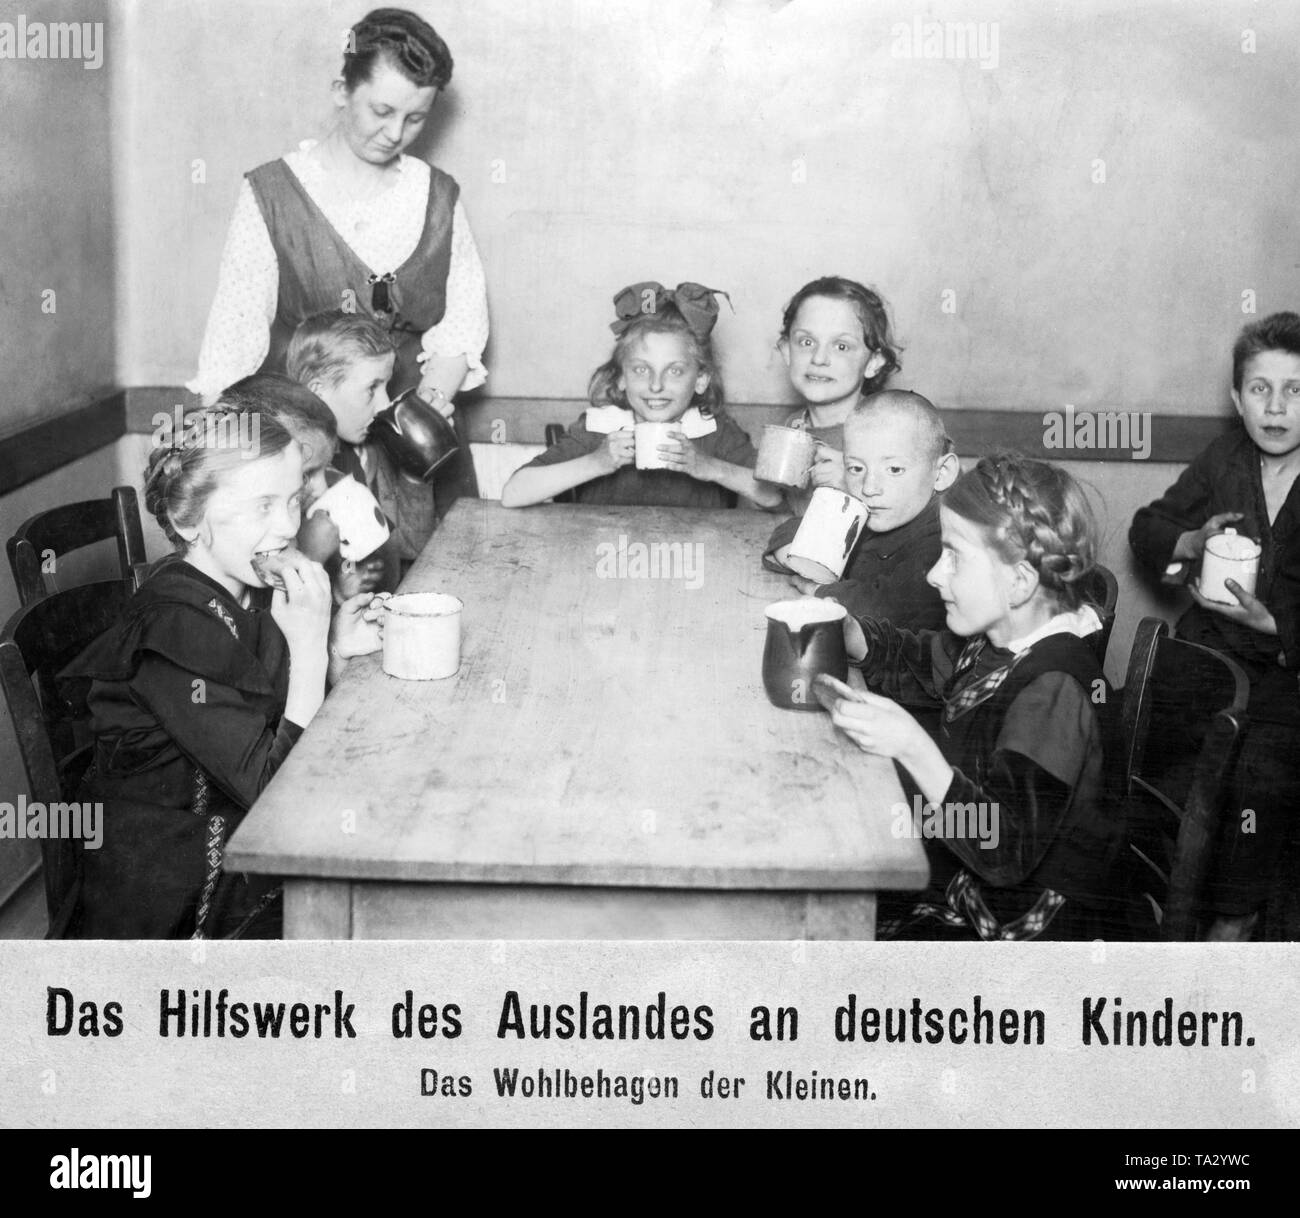 Acht Kinder sitzen in einem Raum - Die meisten um einen Tisch - jeweils mit einem Pokal und etwas zu Essen. Auf der linken Seite steht eine Frau, die einen Jungen zu trinken. Stockfoto